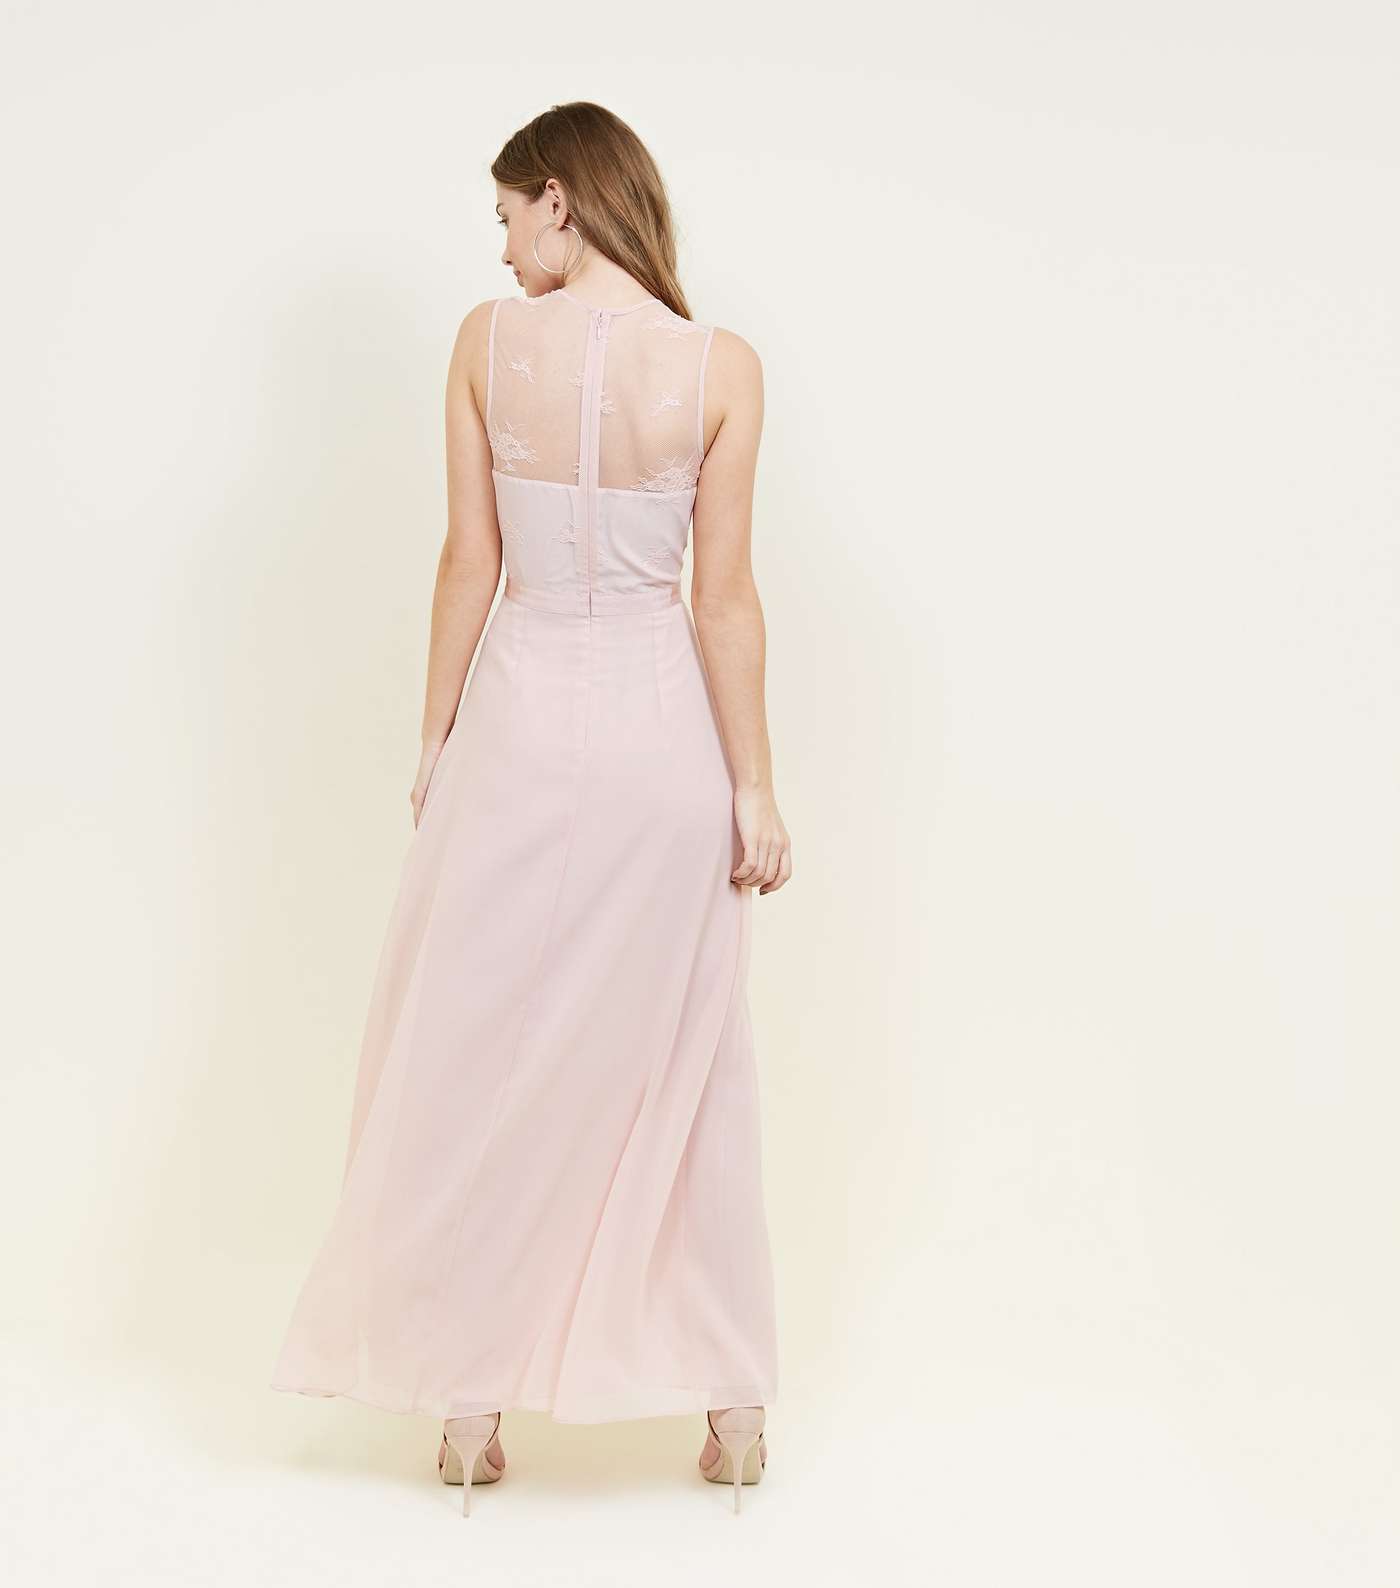 Pink Lace and Chiffon Maxi Dress Image 2